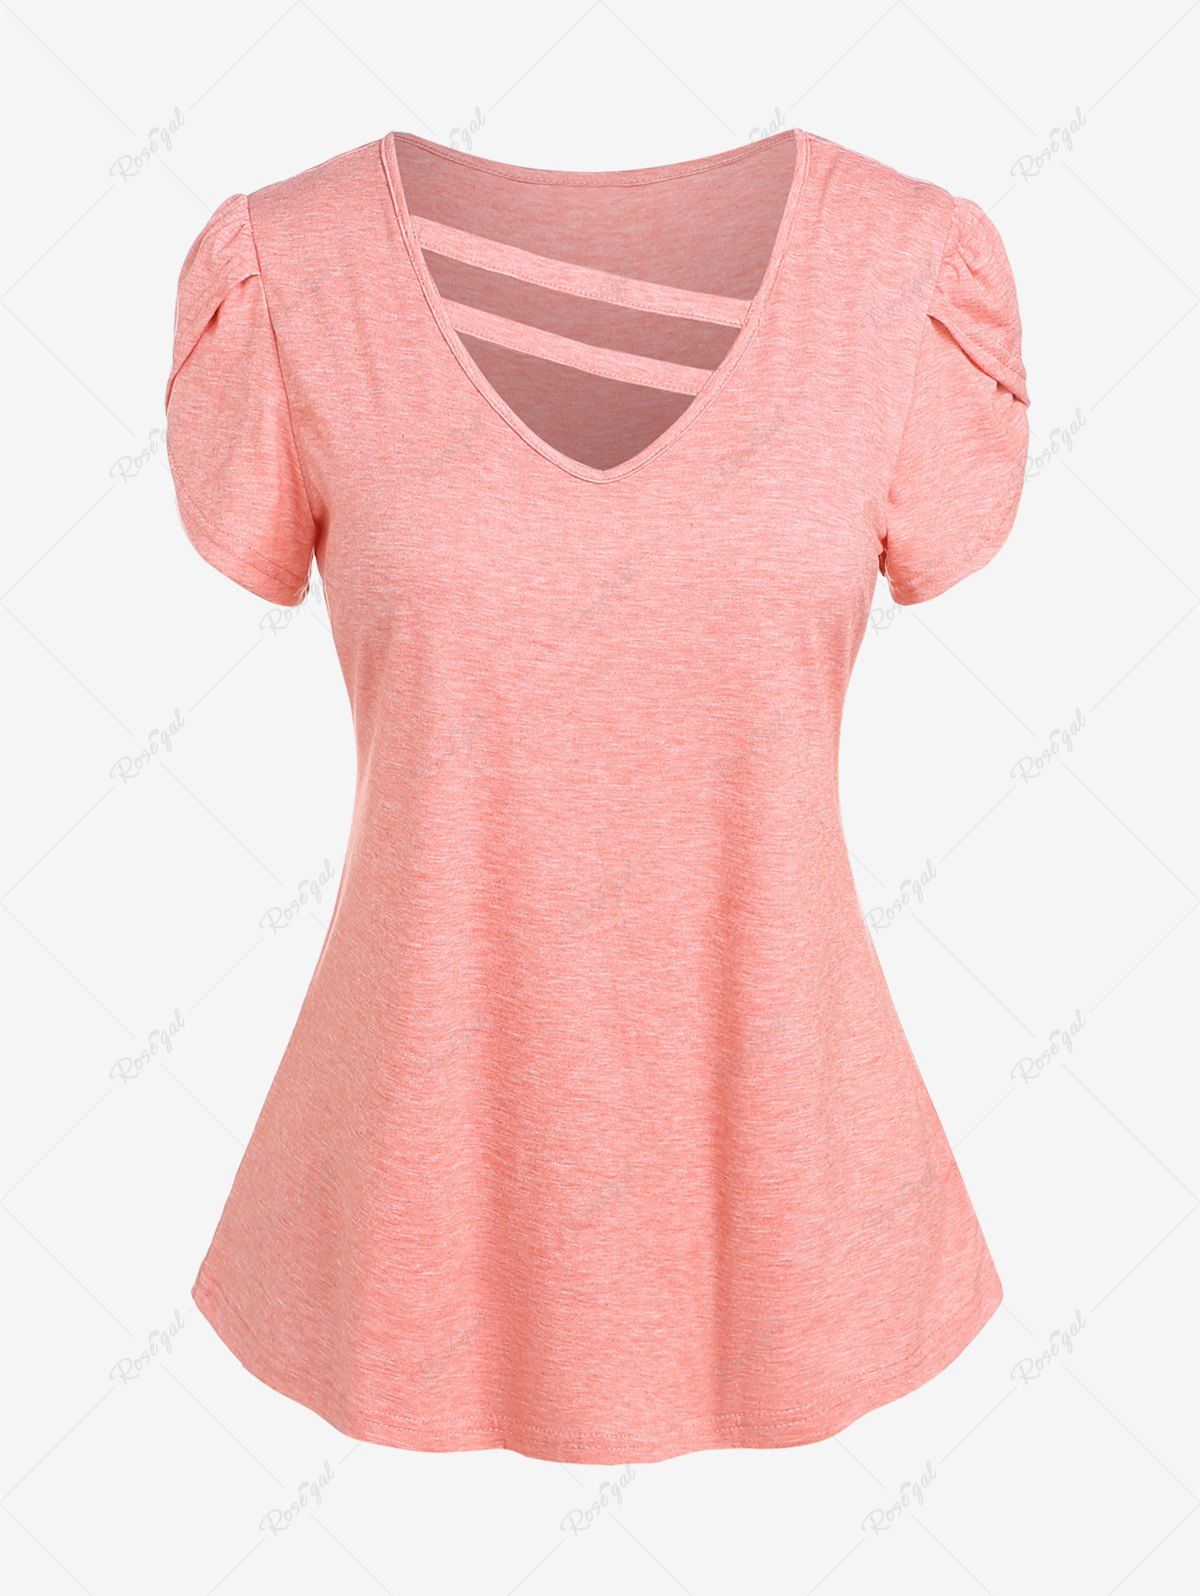 T-shirt Panneau Rayé de Grande Taille à Mancherons Rose clair XL